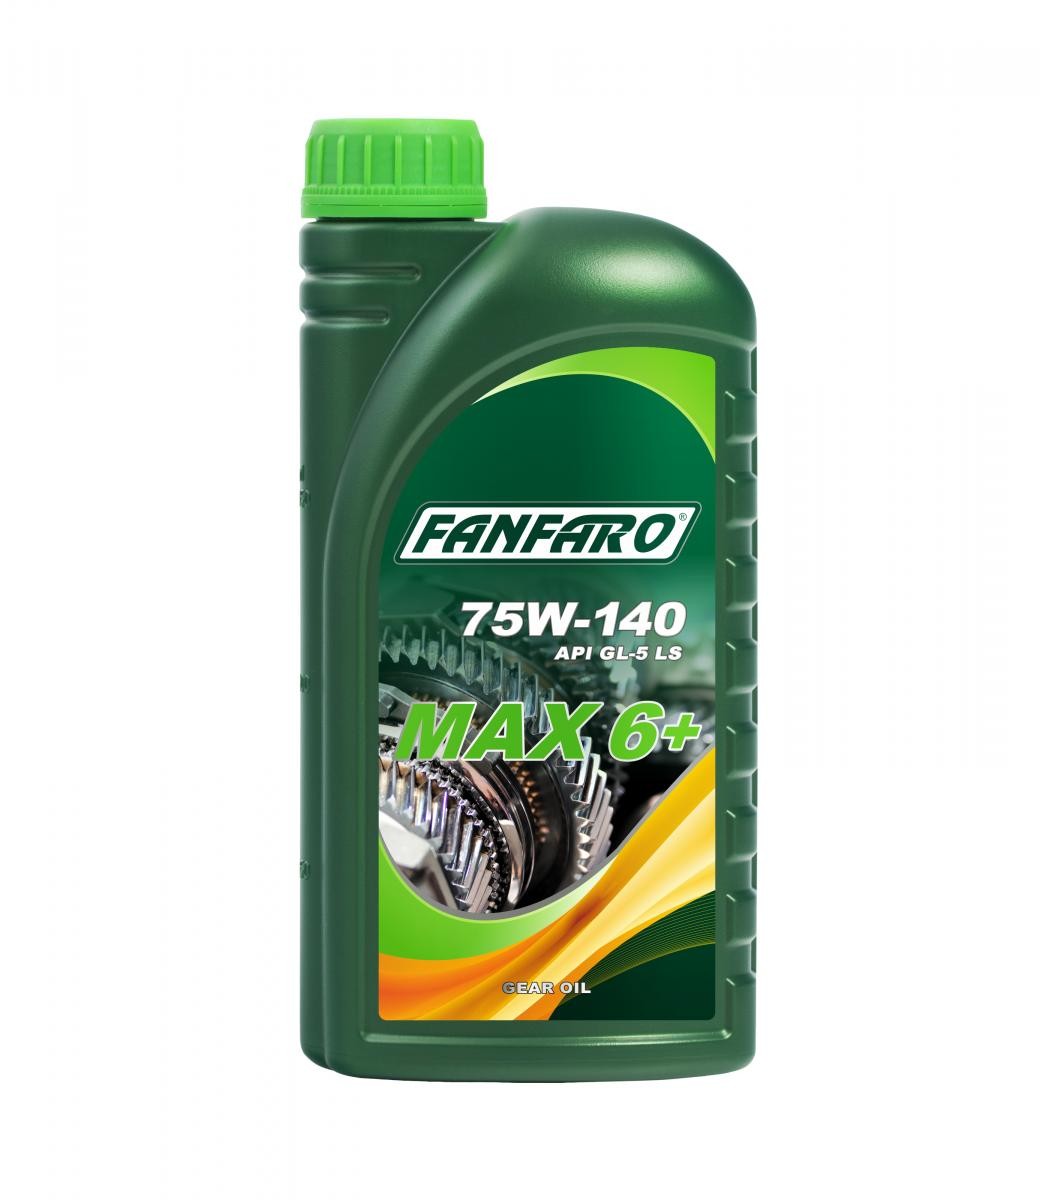 FF8707-1 FANFARO Gearbox oil HONDA 1l, 75W-140, API GL-5 LS